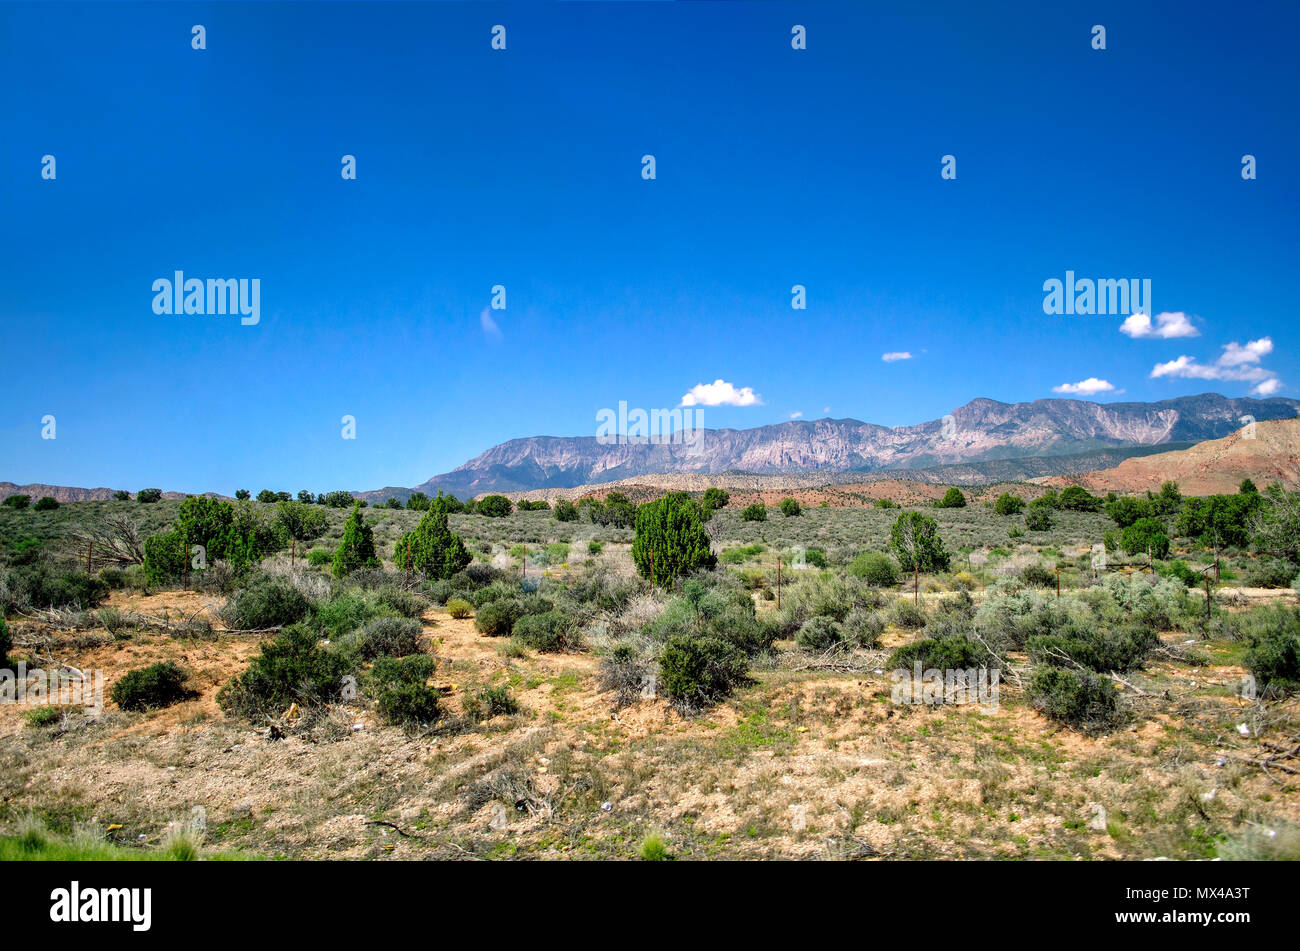 Auf der Suche über eine Wüste Tal mit grünen Bürsten am Berge im Hintergrund unter einem strahlend blauen Himmel mit kleinen weißen Wolken. Stockfoto